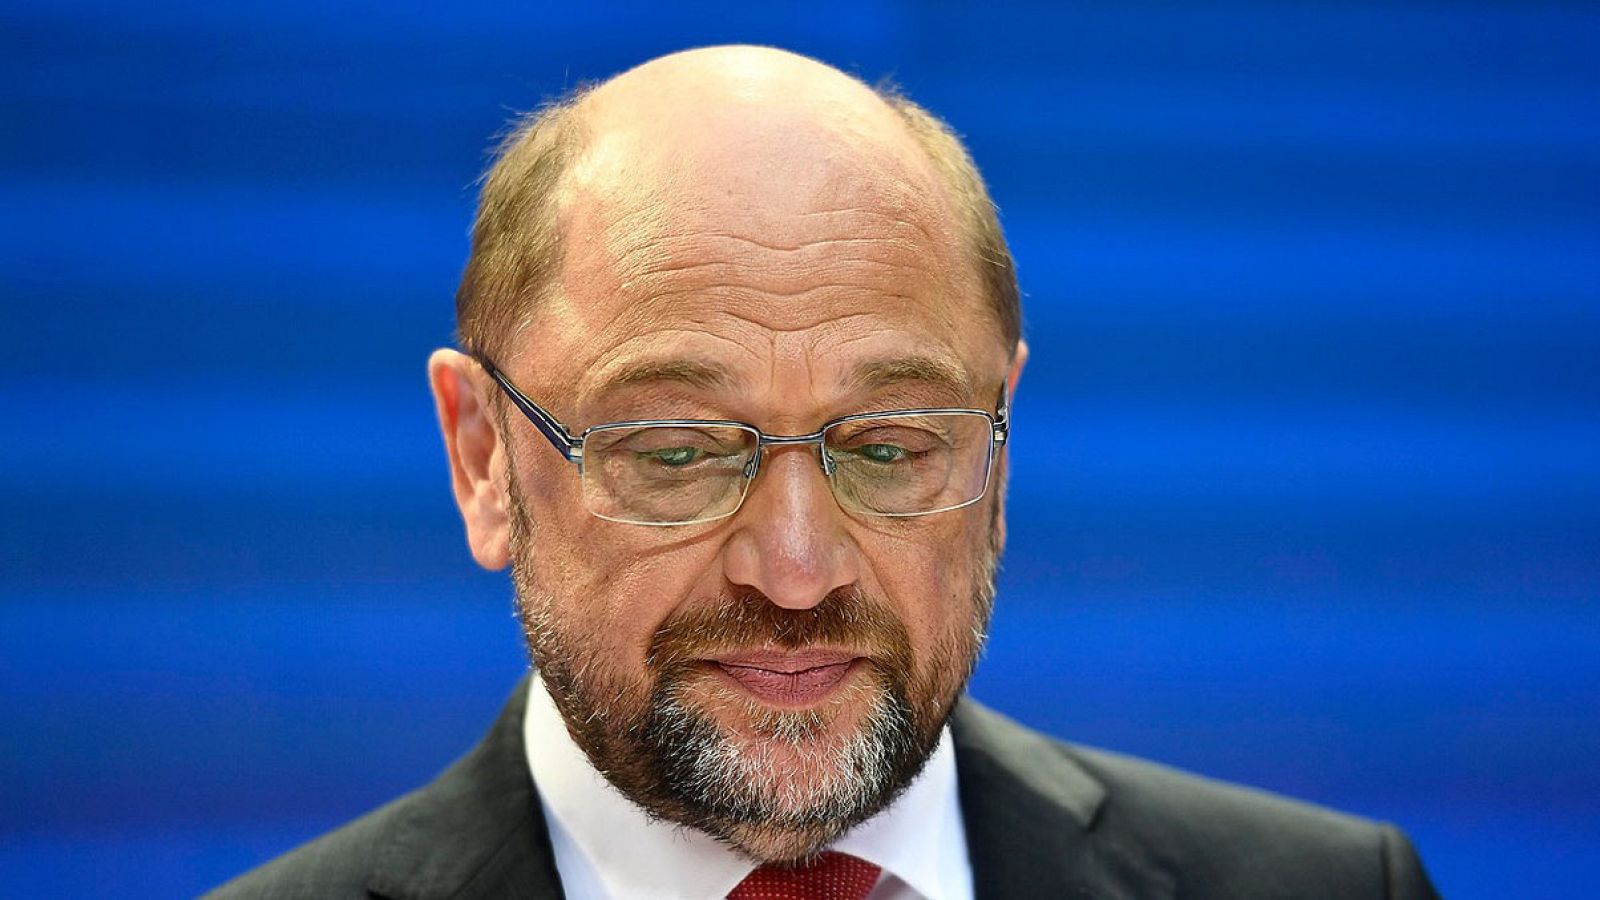 El líder del Partido Socialdemócrata (SPD), Martin Schulz, ofrece una rueda de prensa en Berlín